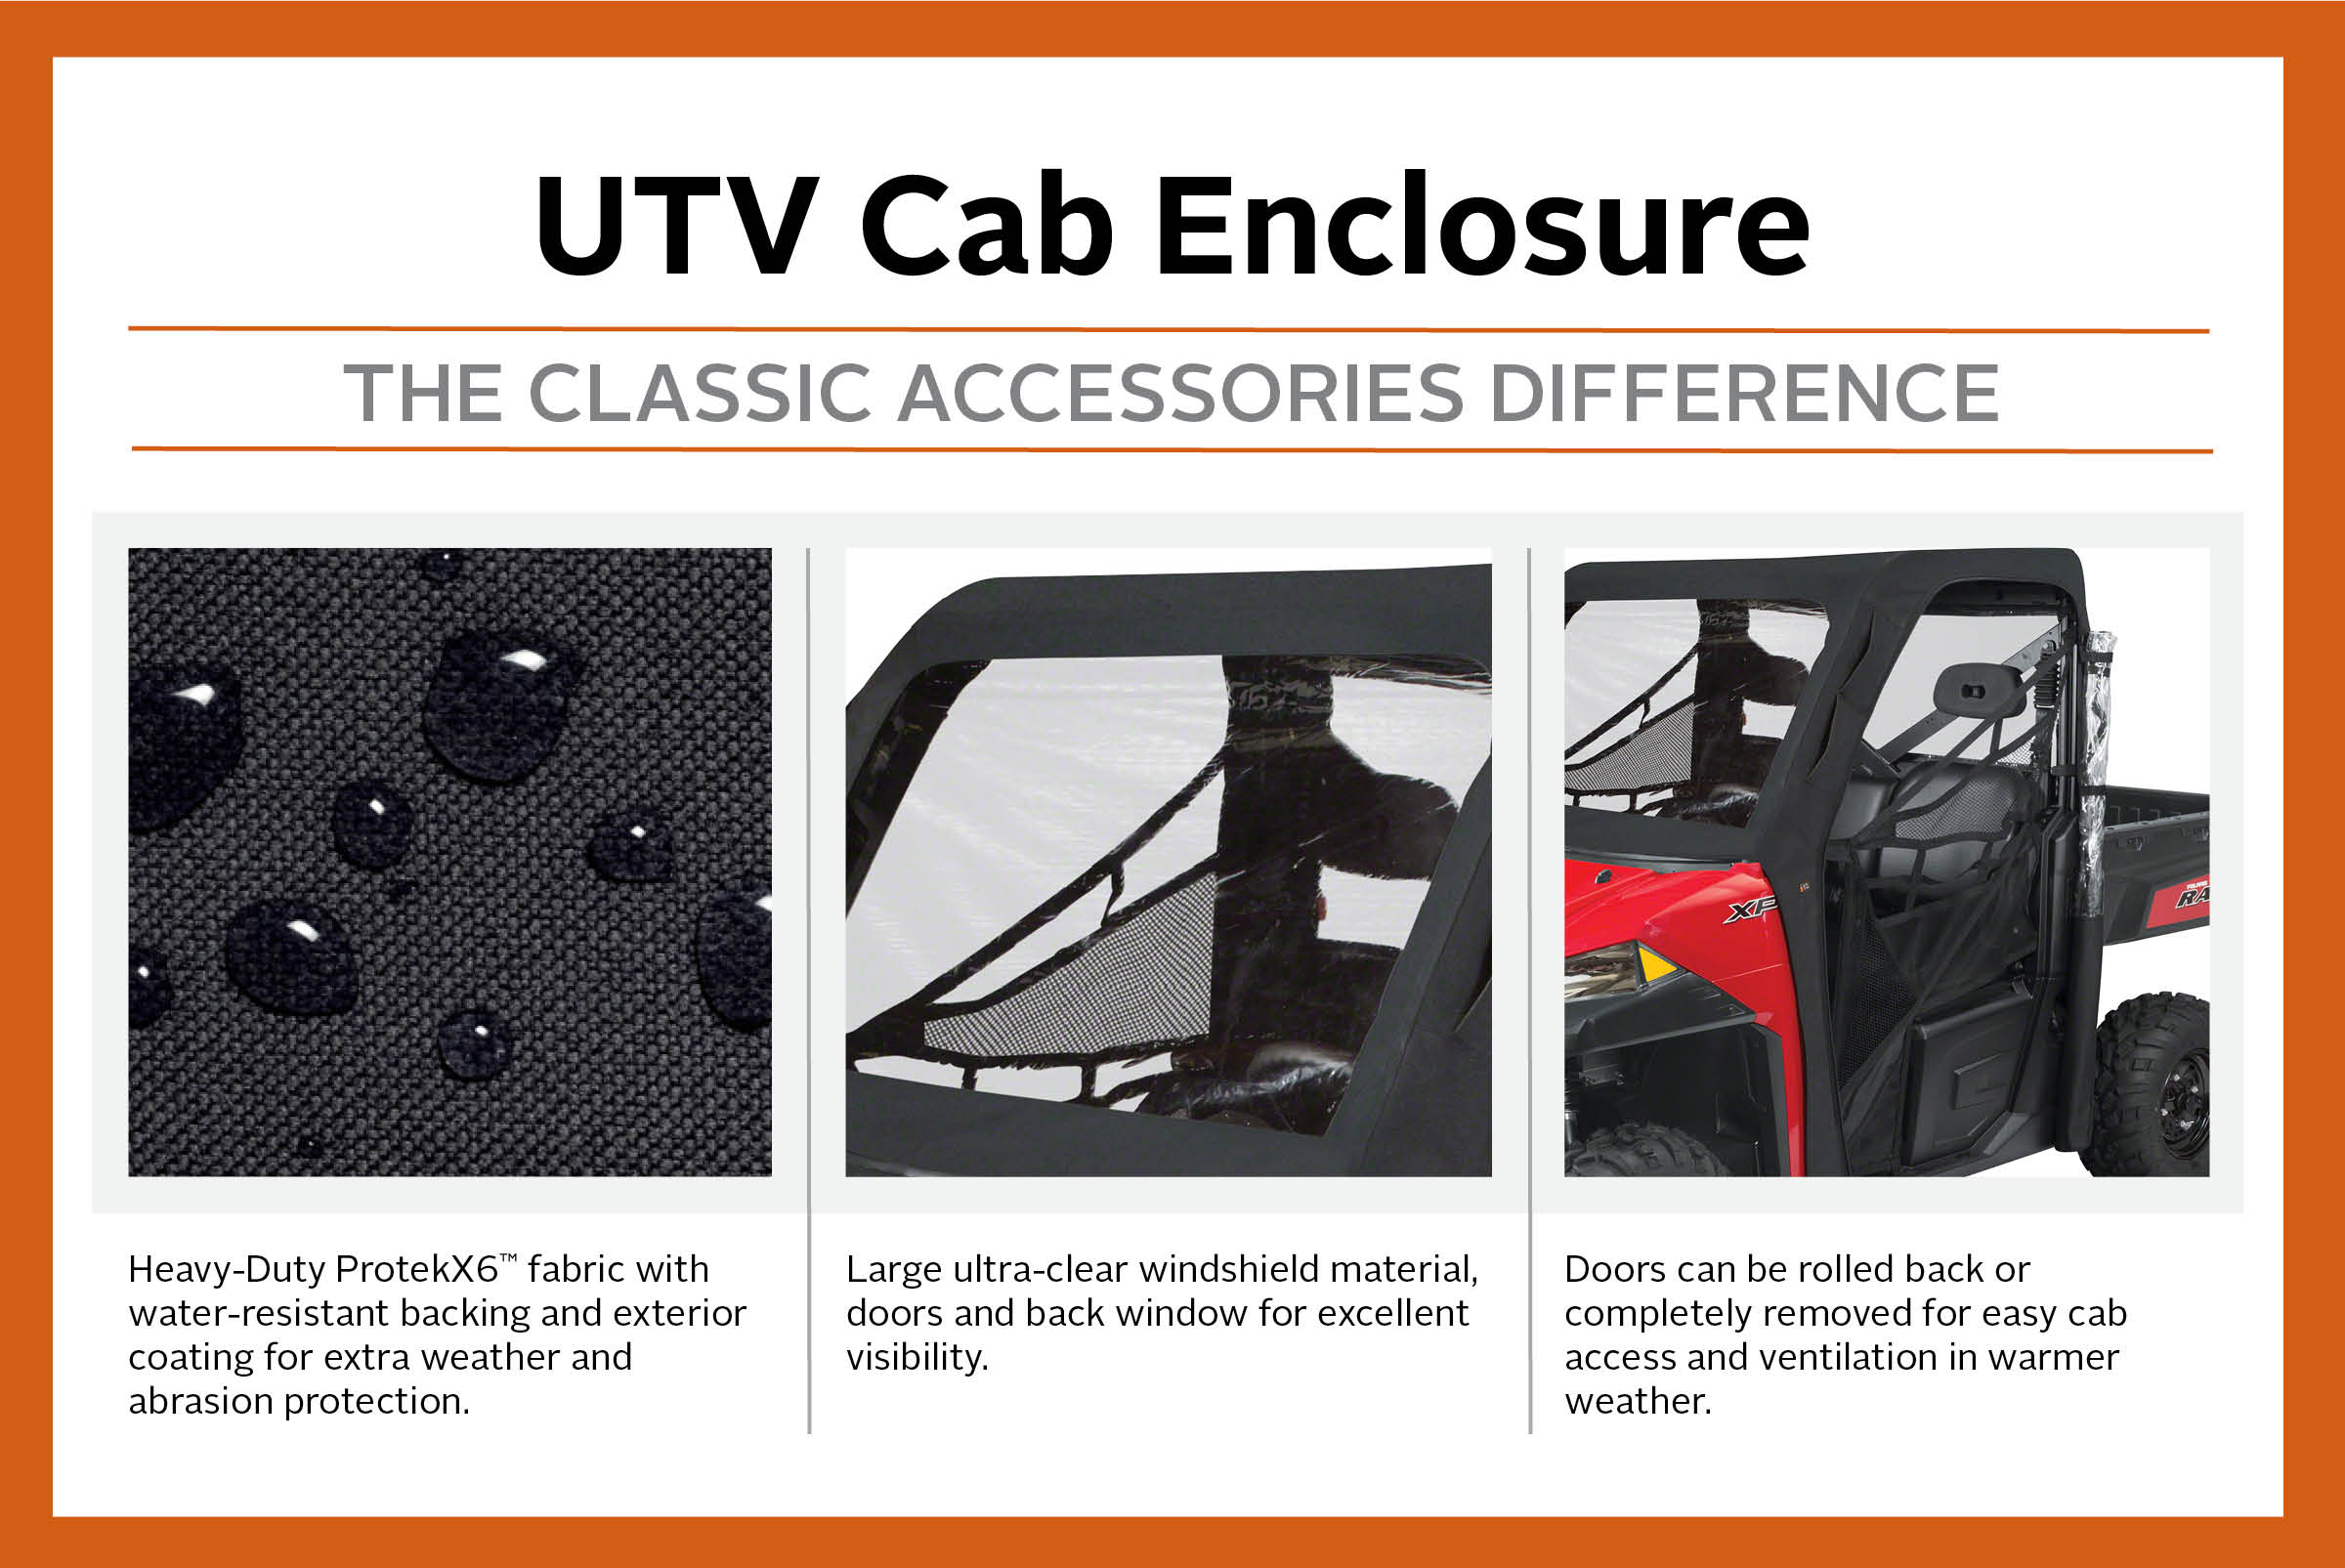 Classic Accessories QuadGear UTV Cab Enclosure, Fits Kawasaki Teryx 750 F1 (2015 models and older), Black - image 2 of 9